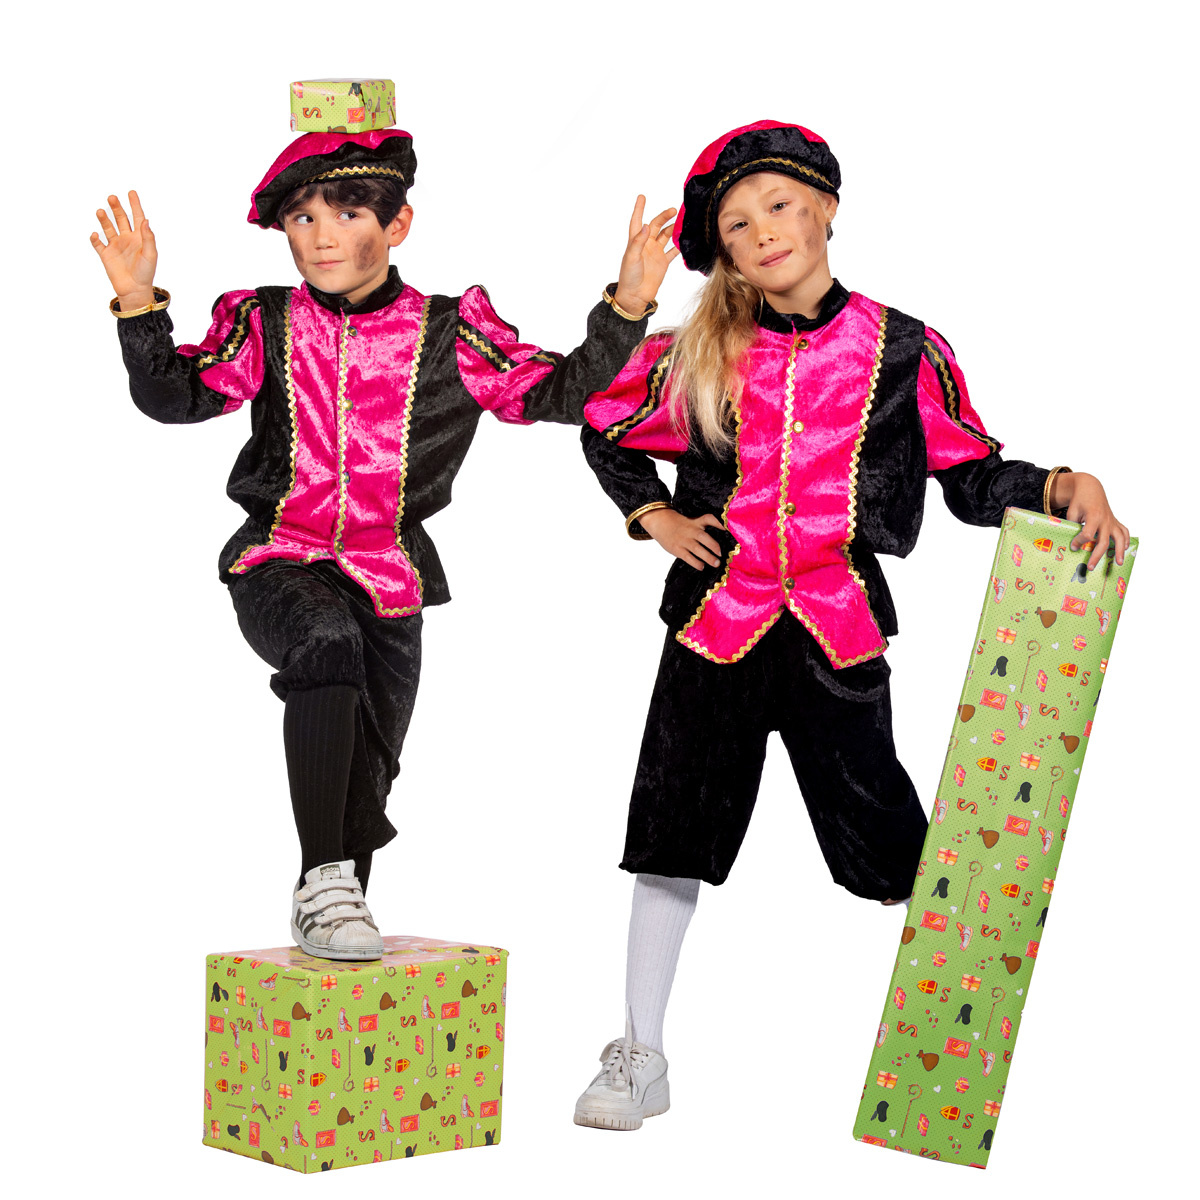 Wilbers & Wilbers - Pietenpakken - Vrolijk Pietje Roze Pietenpak Kind Kostuum - Roze - Maat 152 - Sinterklaas - Verkleedkleding